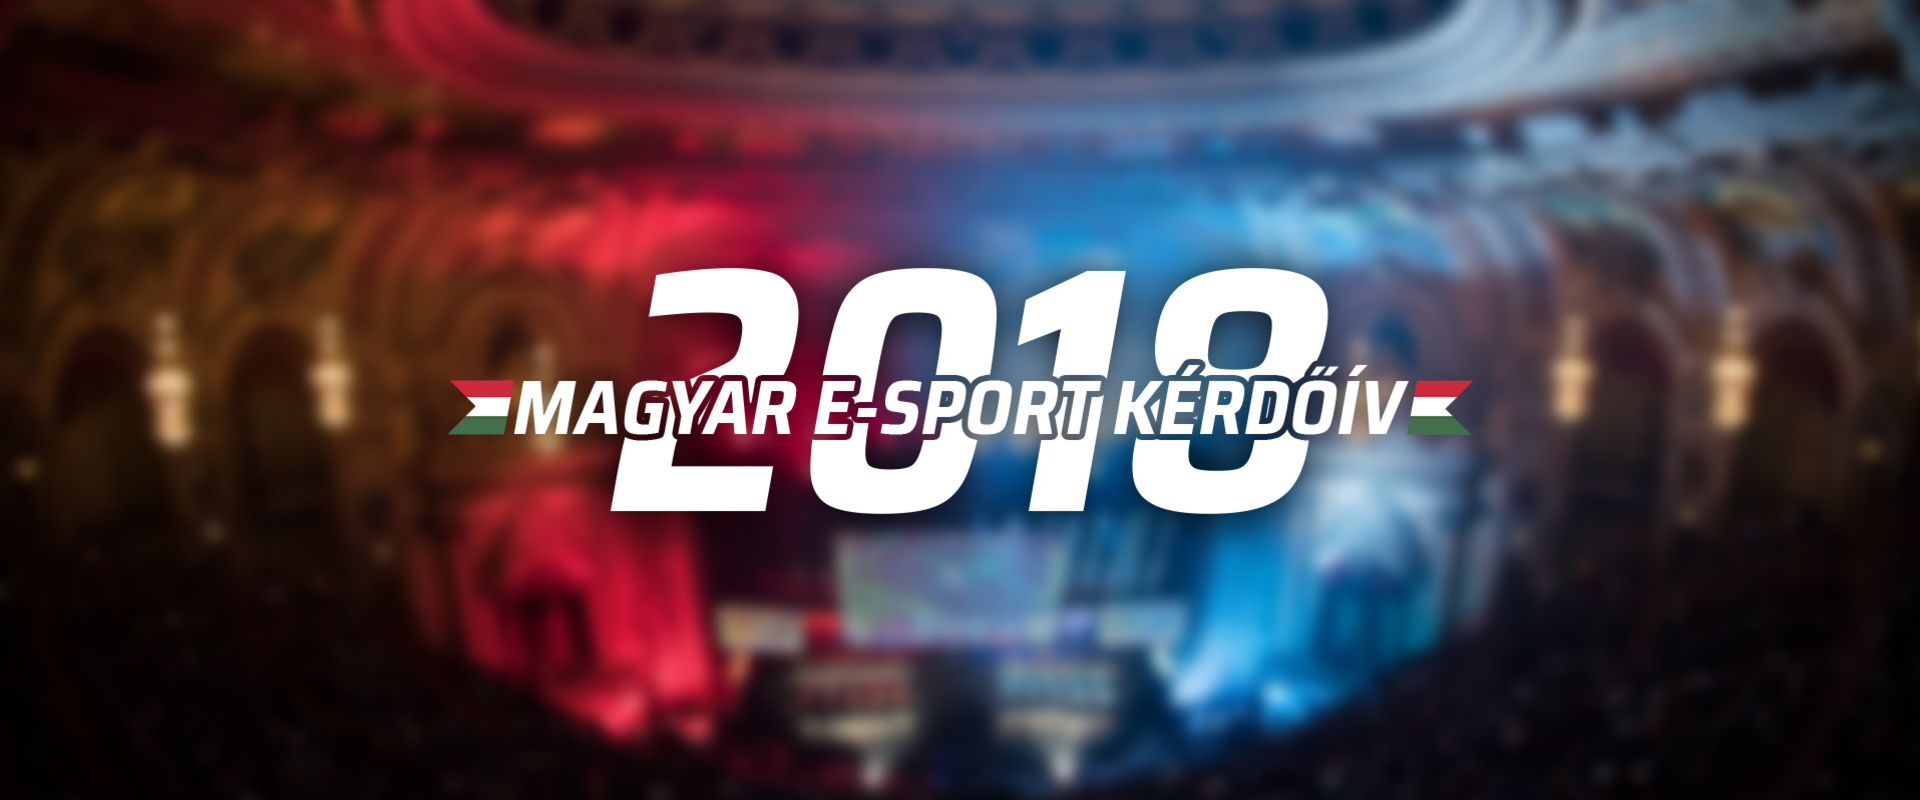 Töltsd ki a 2018-as Magyar E-sport Kérdőívet és nyerj páros jegyet a PlayIT-re!